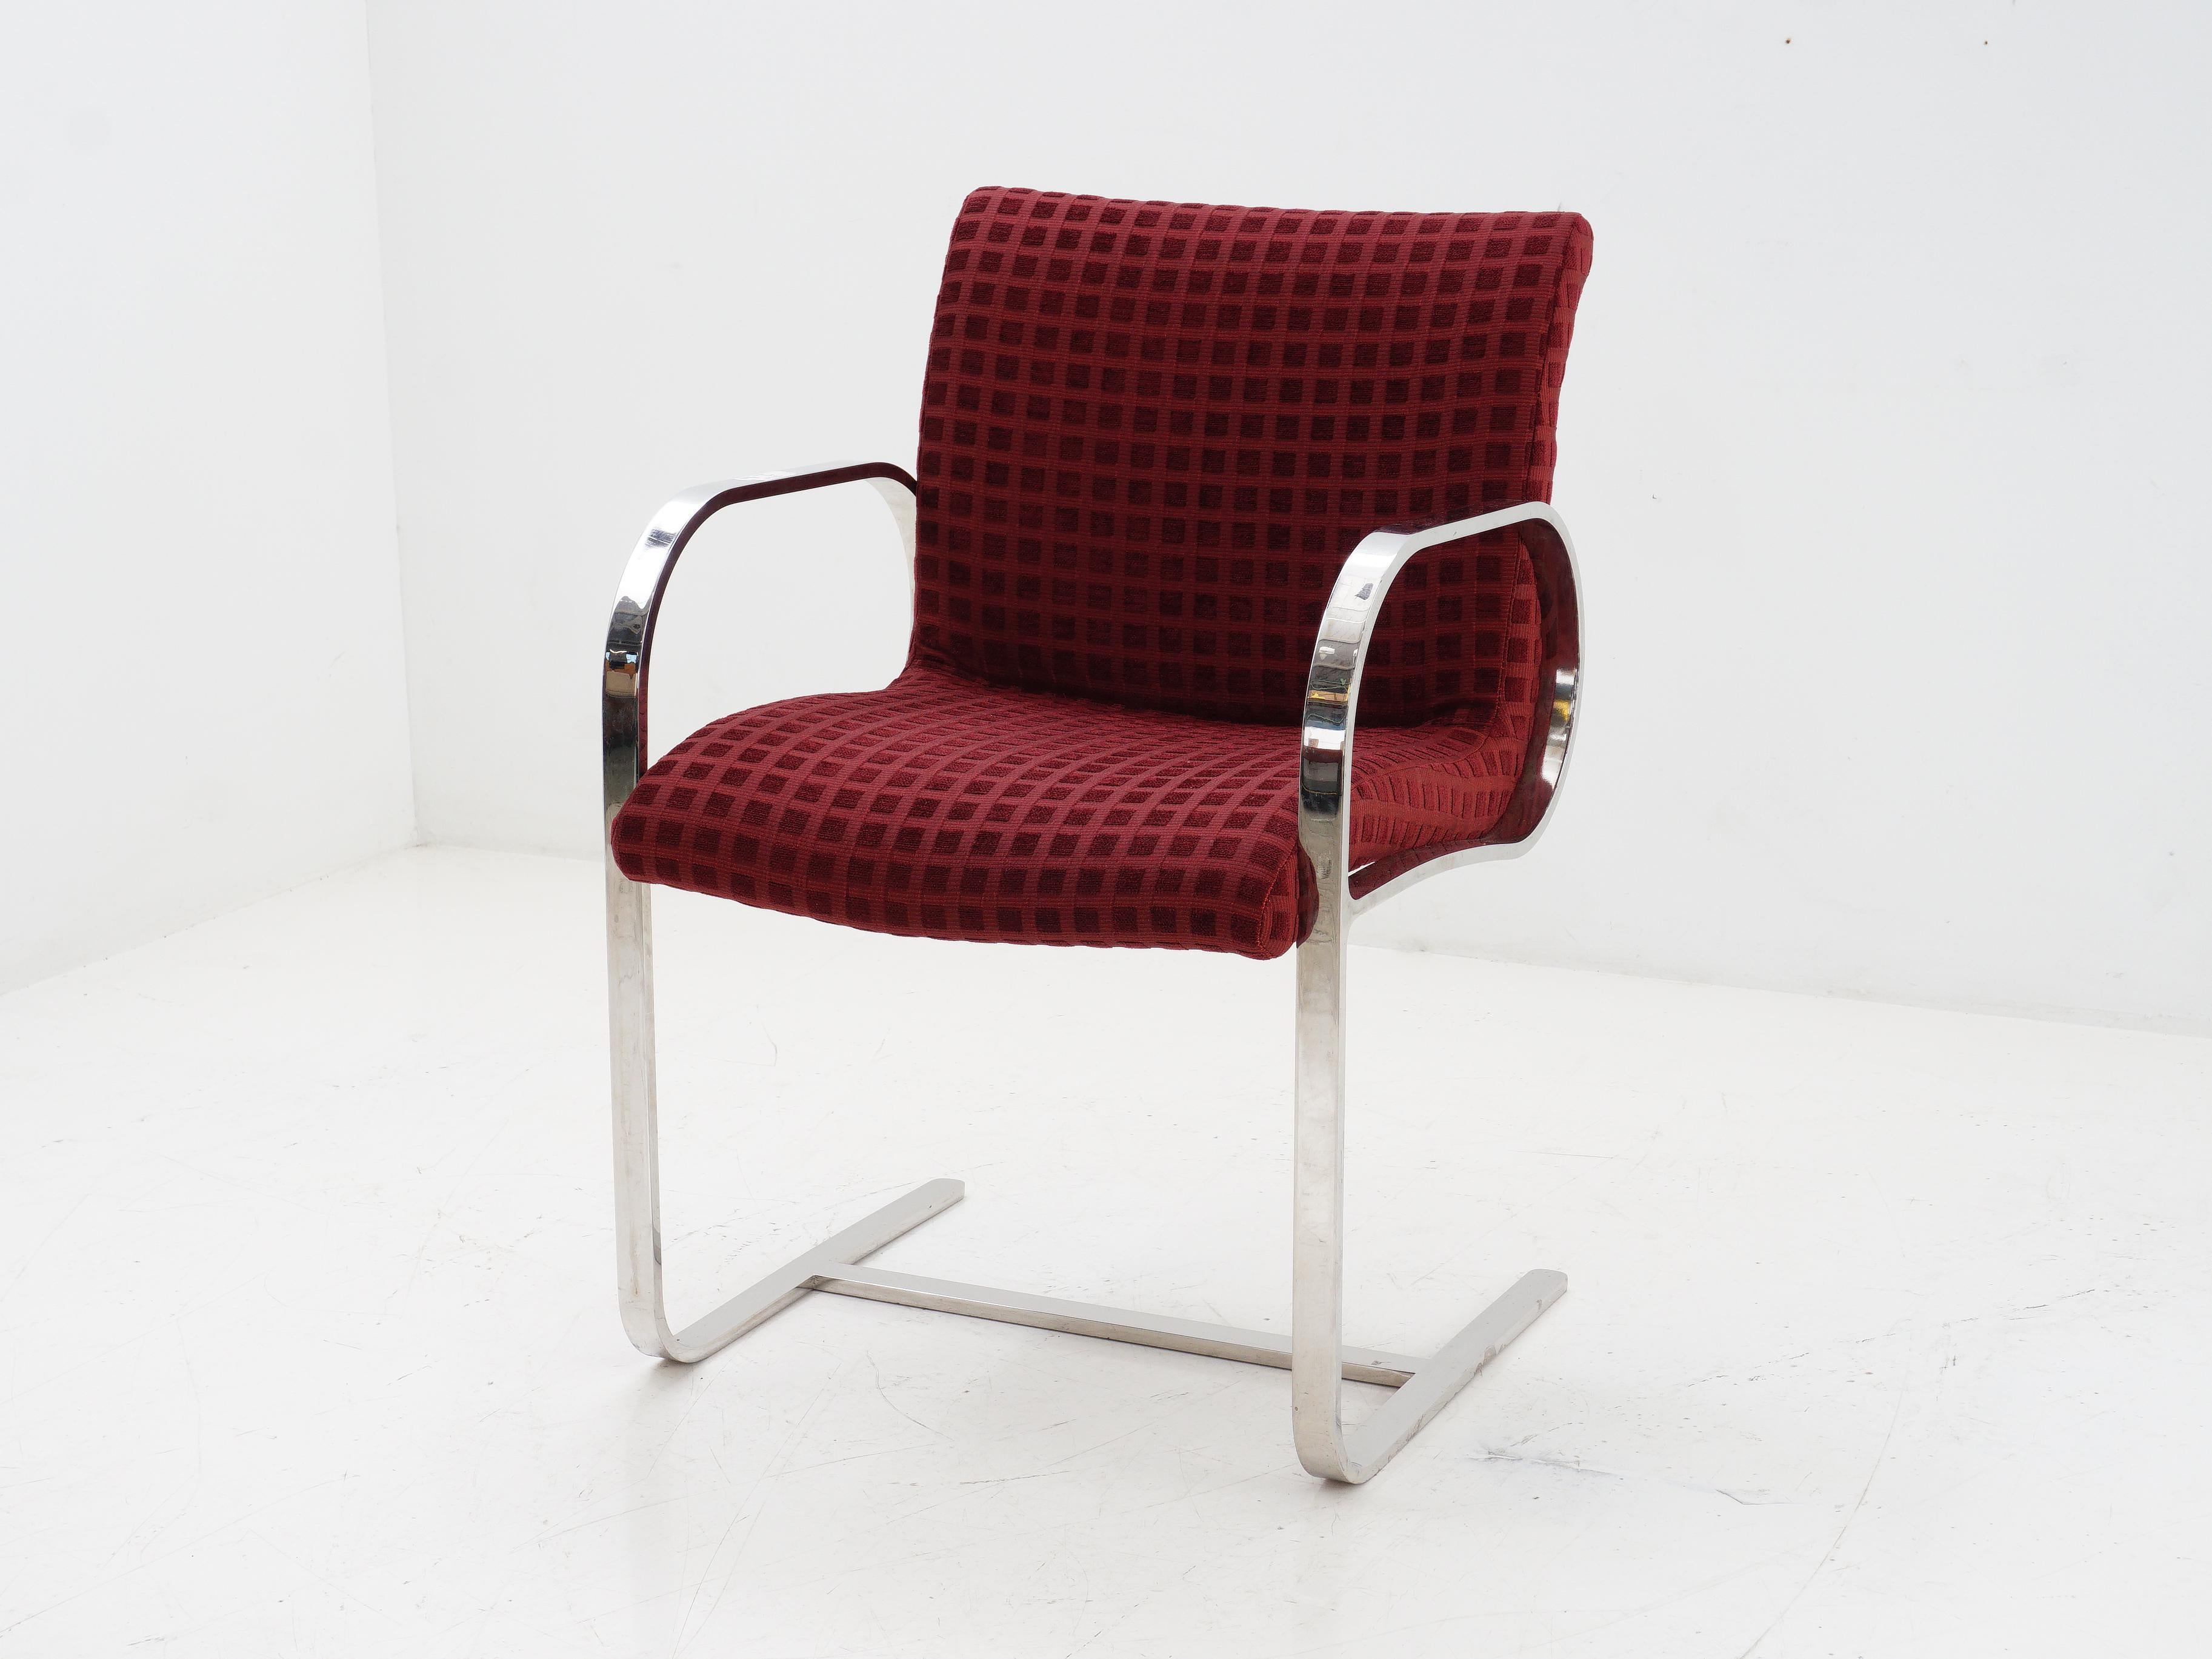 Freitragender Chrom-Flatbar-Stuhl, 1970er-Jahre (Samt)